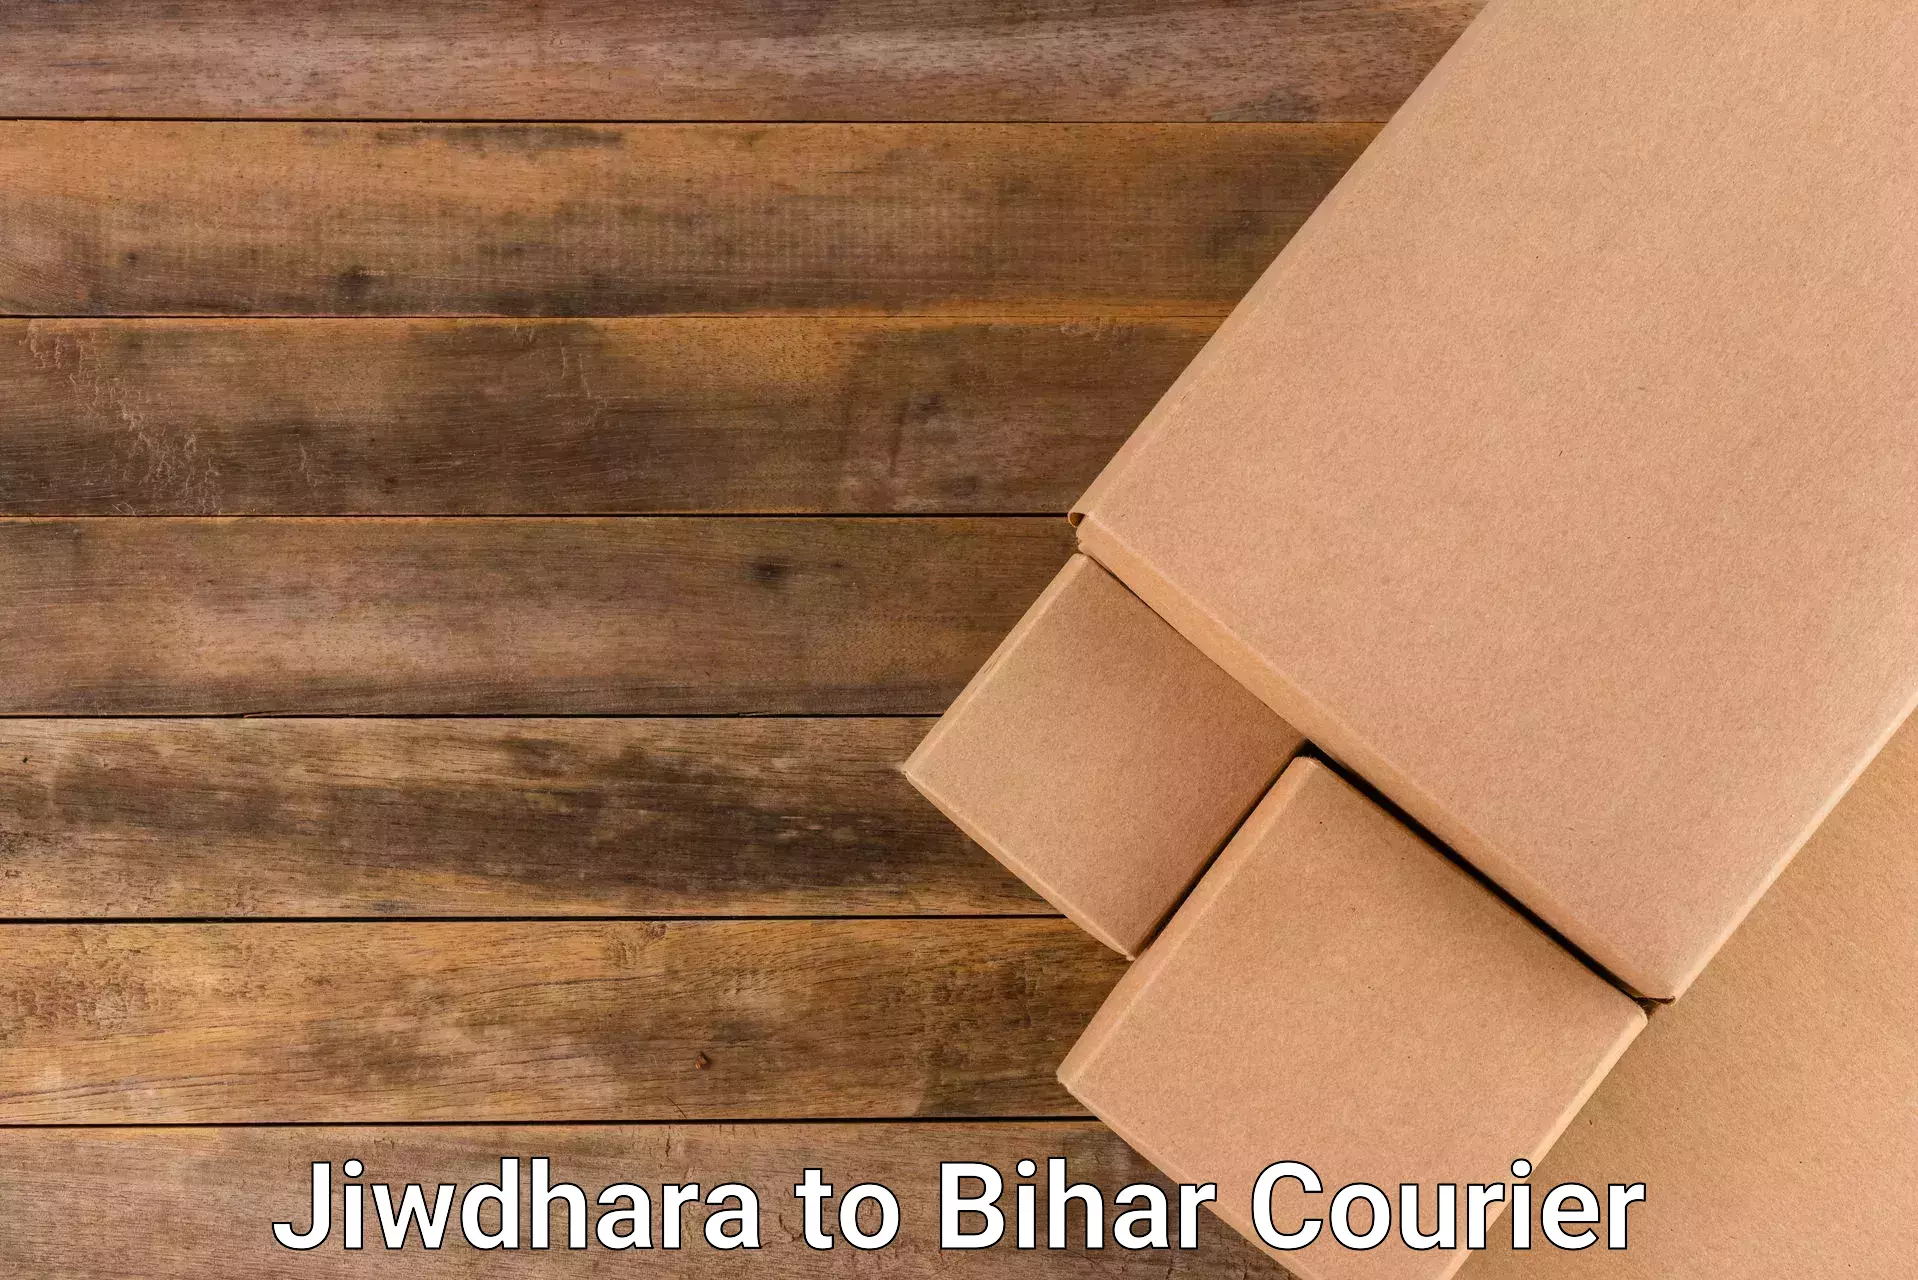 Digital courier platforms Jiwdhara to Mairwa